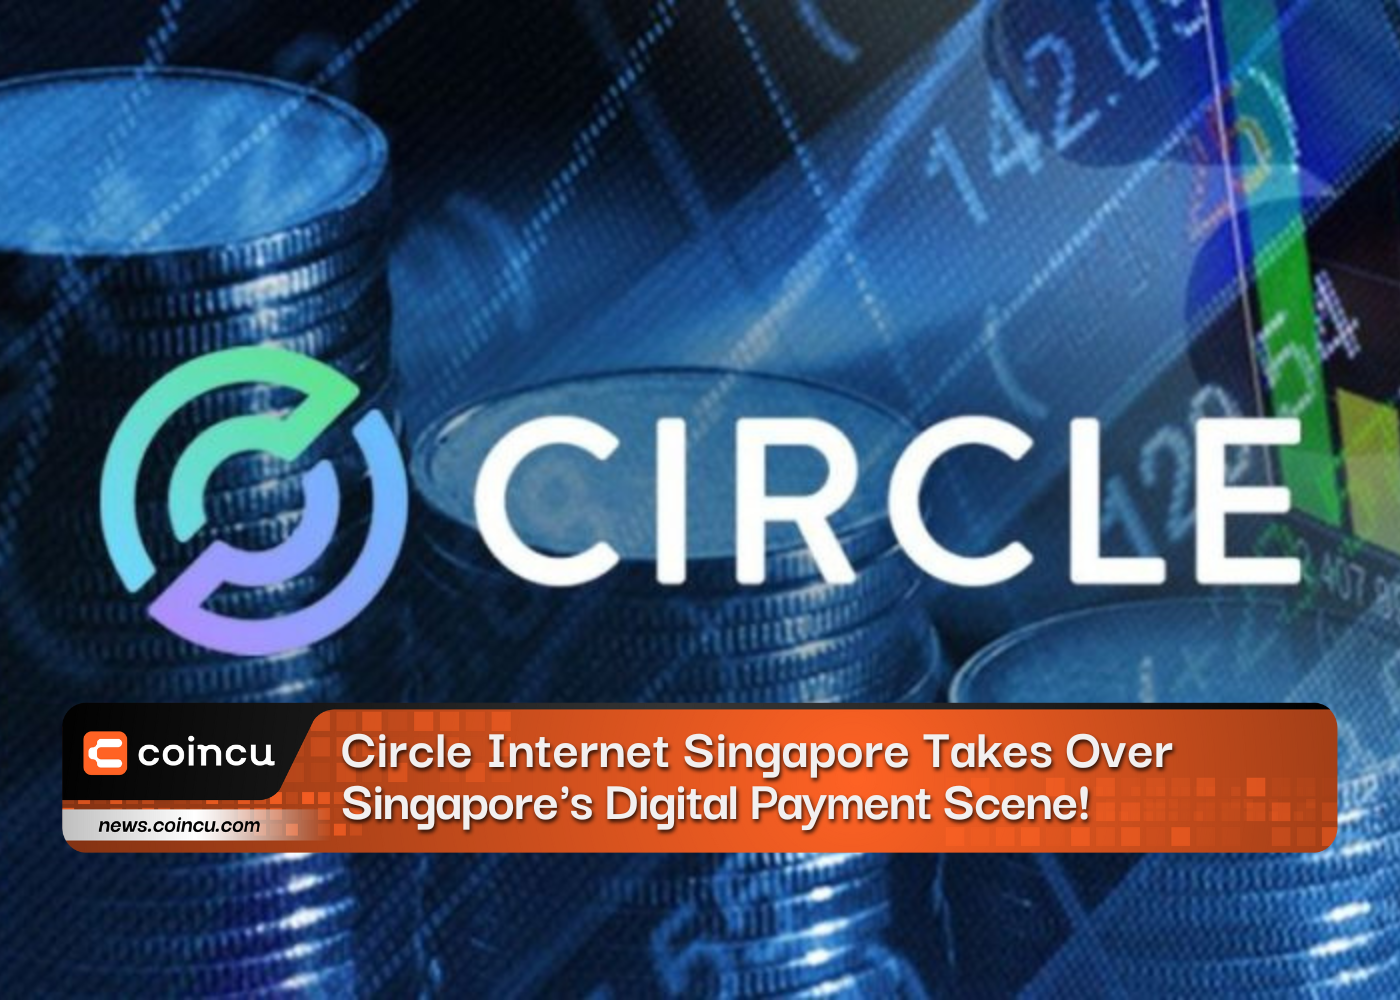 آخرین خبر: Circle Internet Singapore صحنه پرداخت دیجیتال سنگاپور را با مجوز MAS تصاحب کرد!